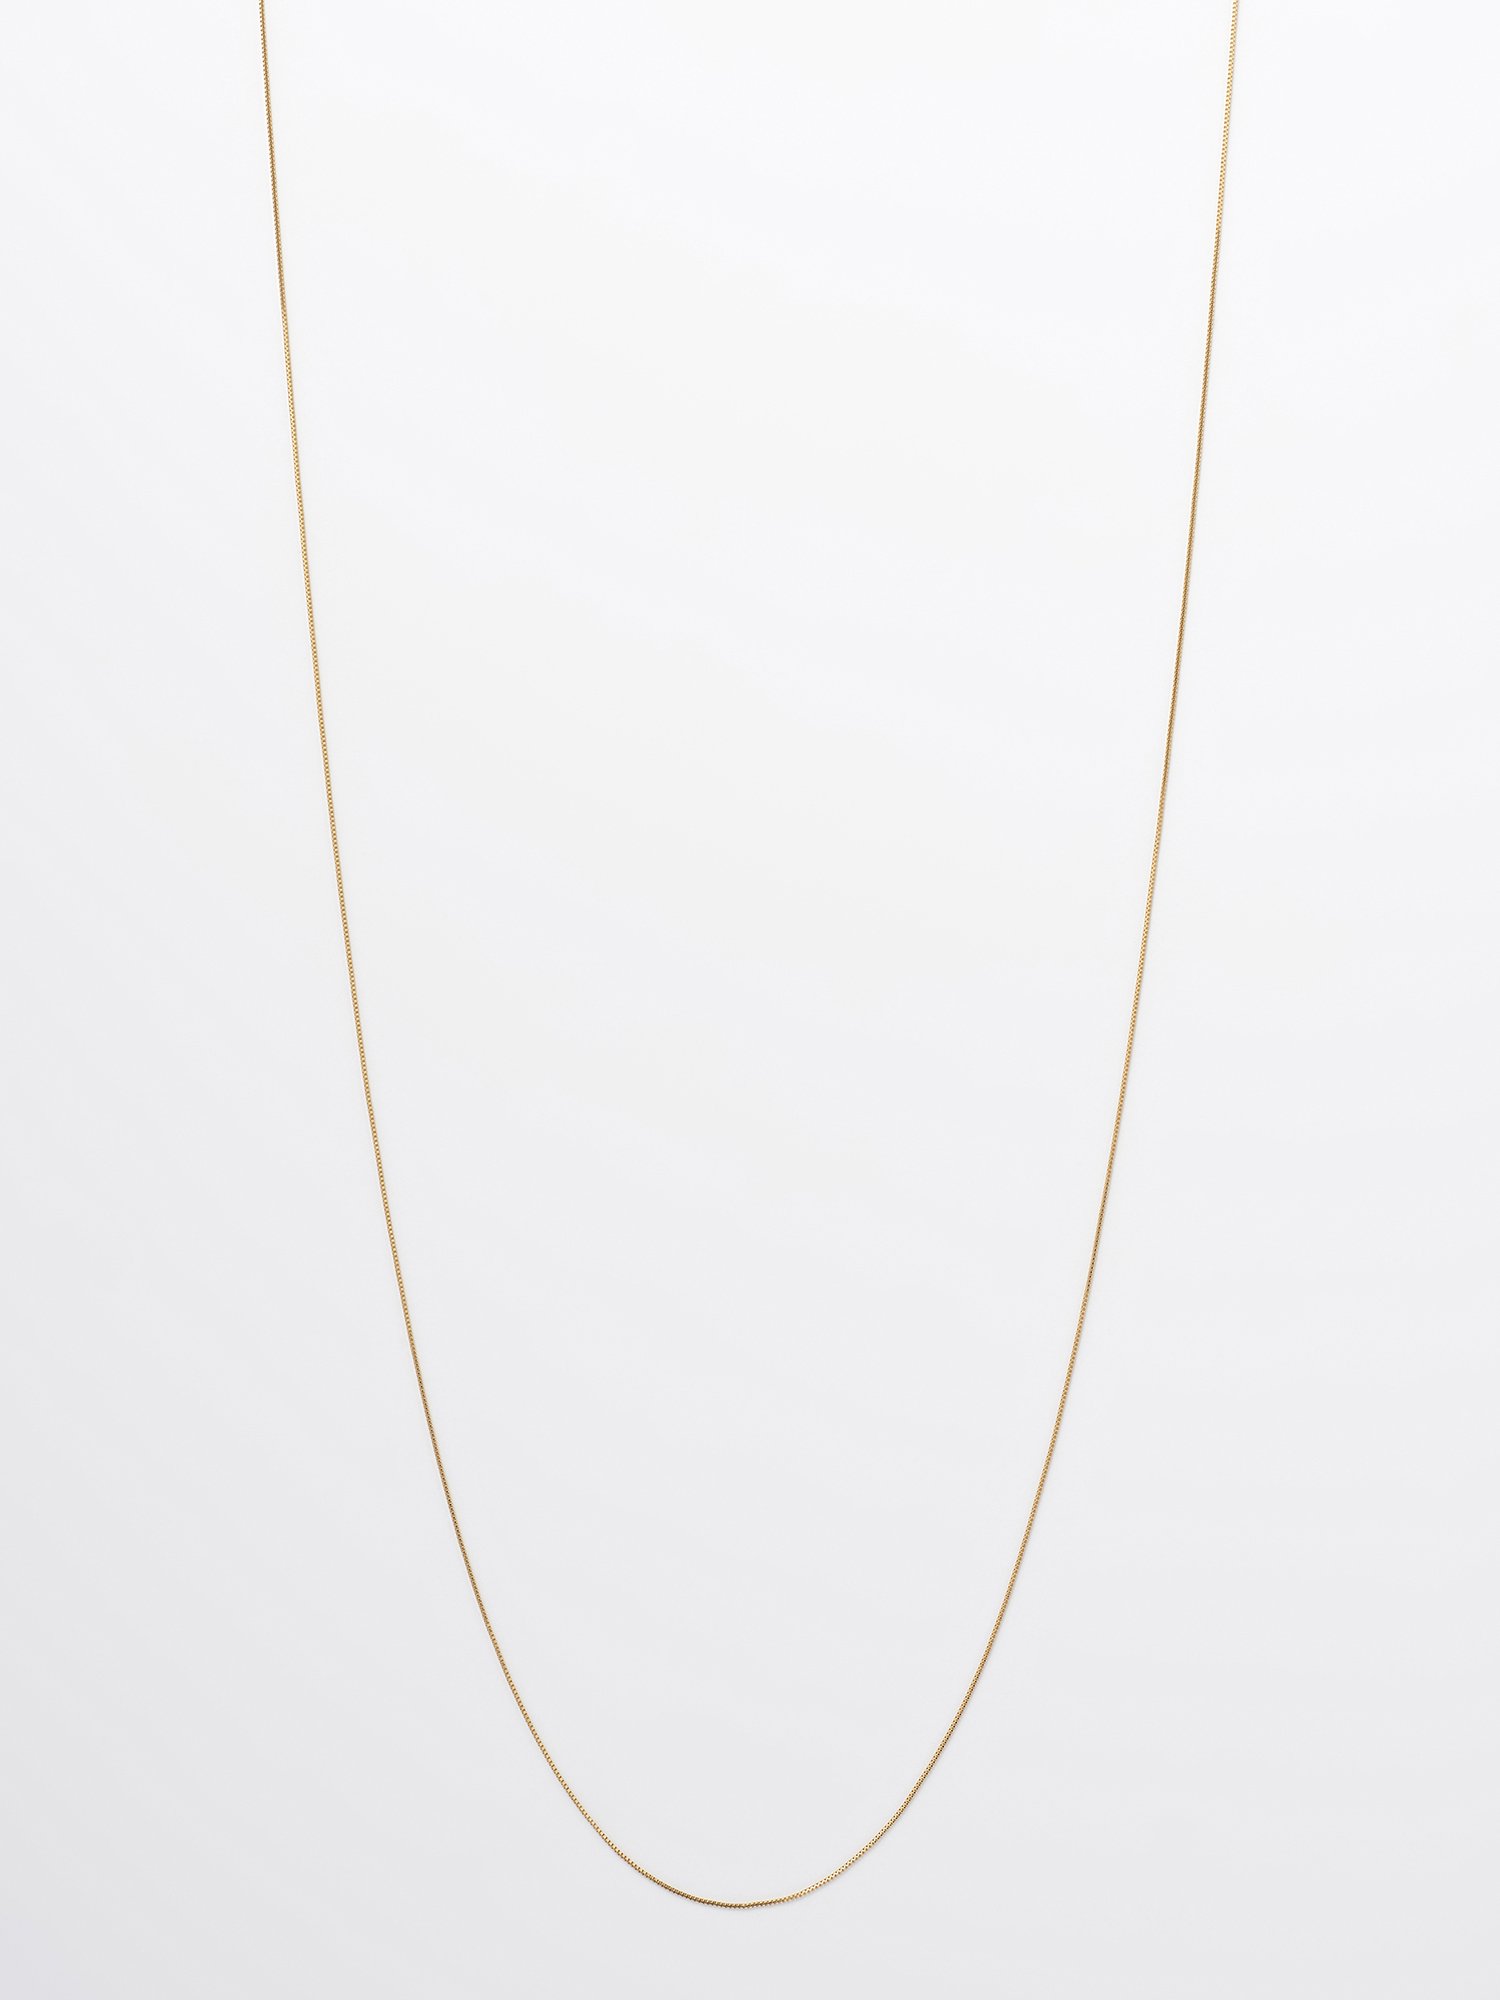  SOPHISTICATED VINTAGE / Gold line necklace / 950mm